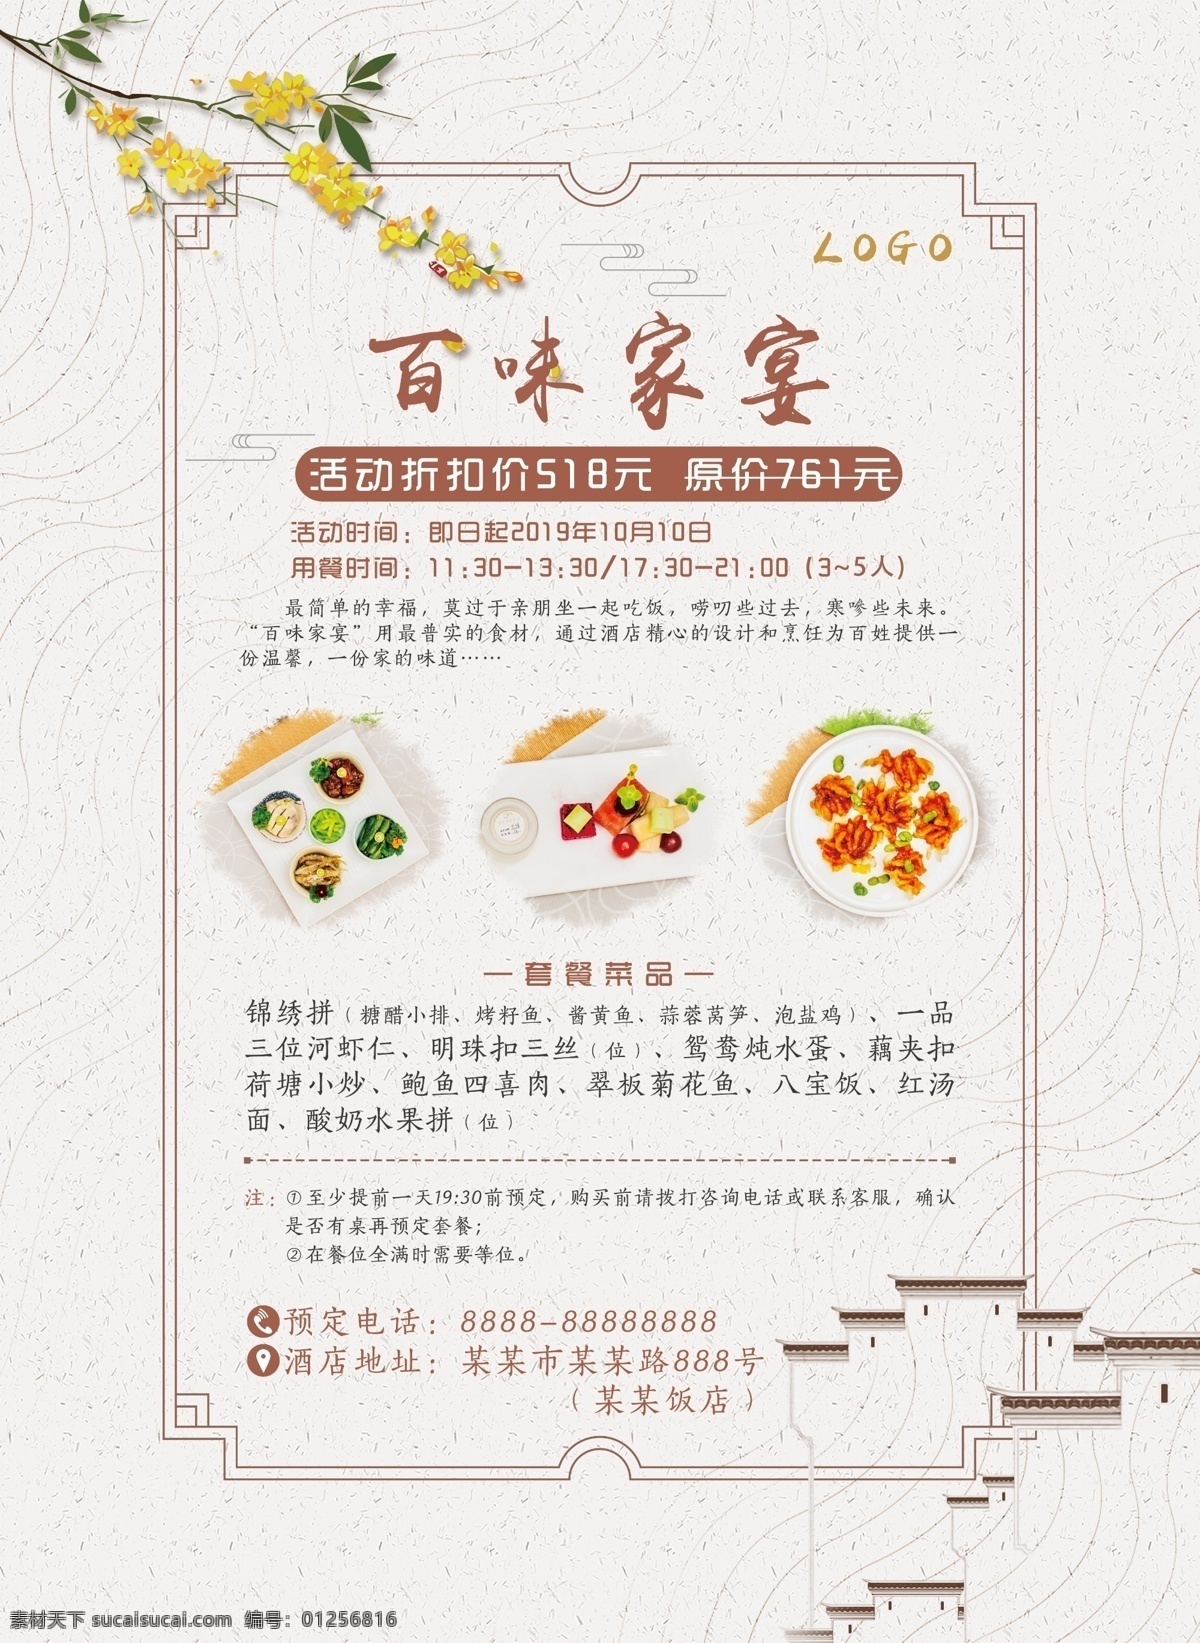 传统 中国 风 酒店 菜品 套餐 海报 宣传 中国风 中式 电梯广告 酒店菜品套餐 电梯海报